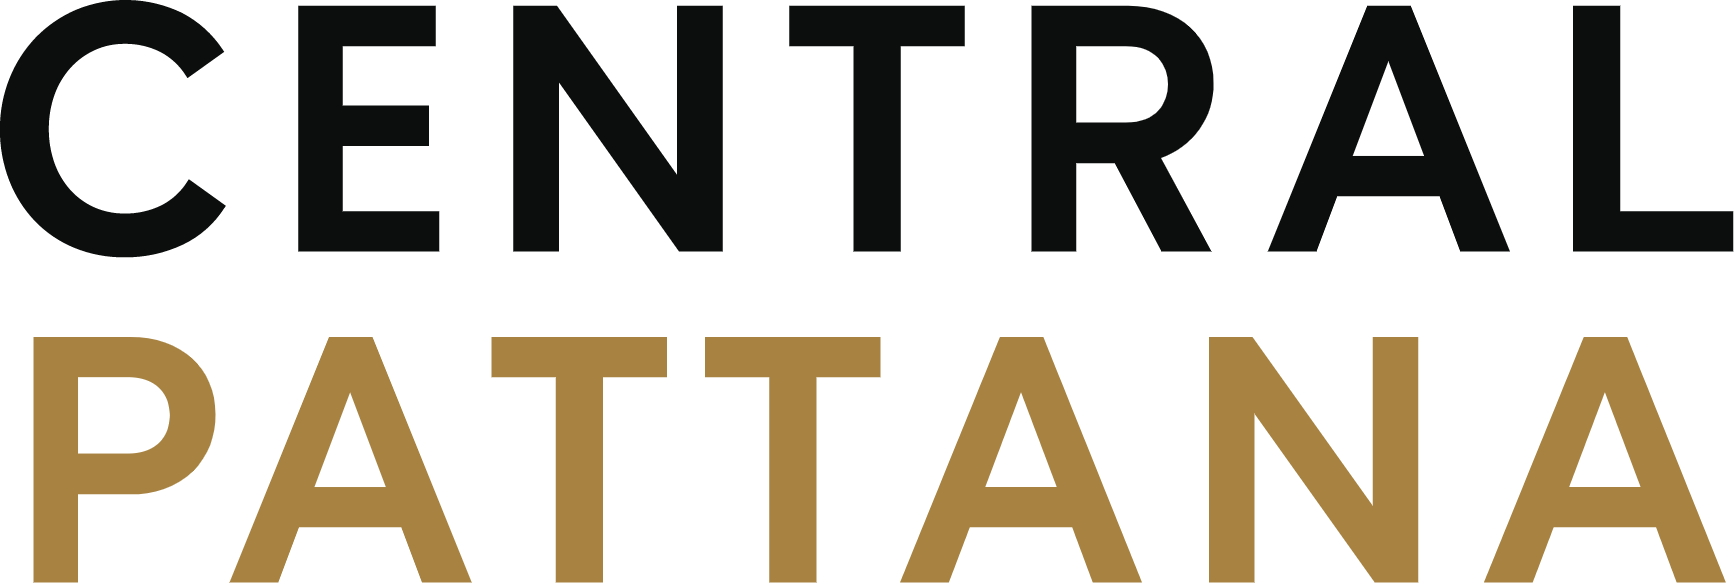 Central Pattana
 logo (PNG transparent)